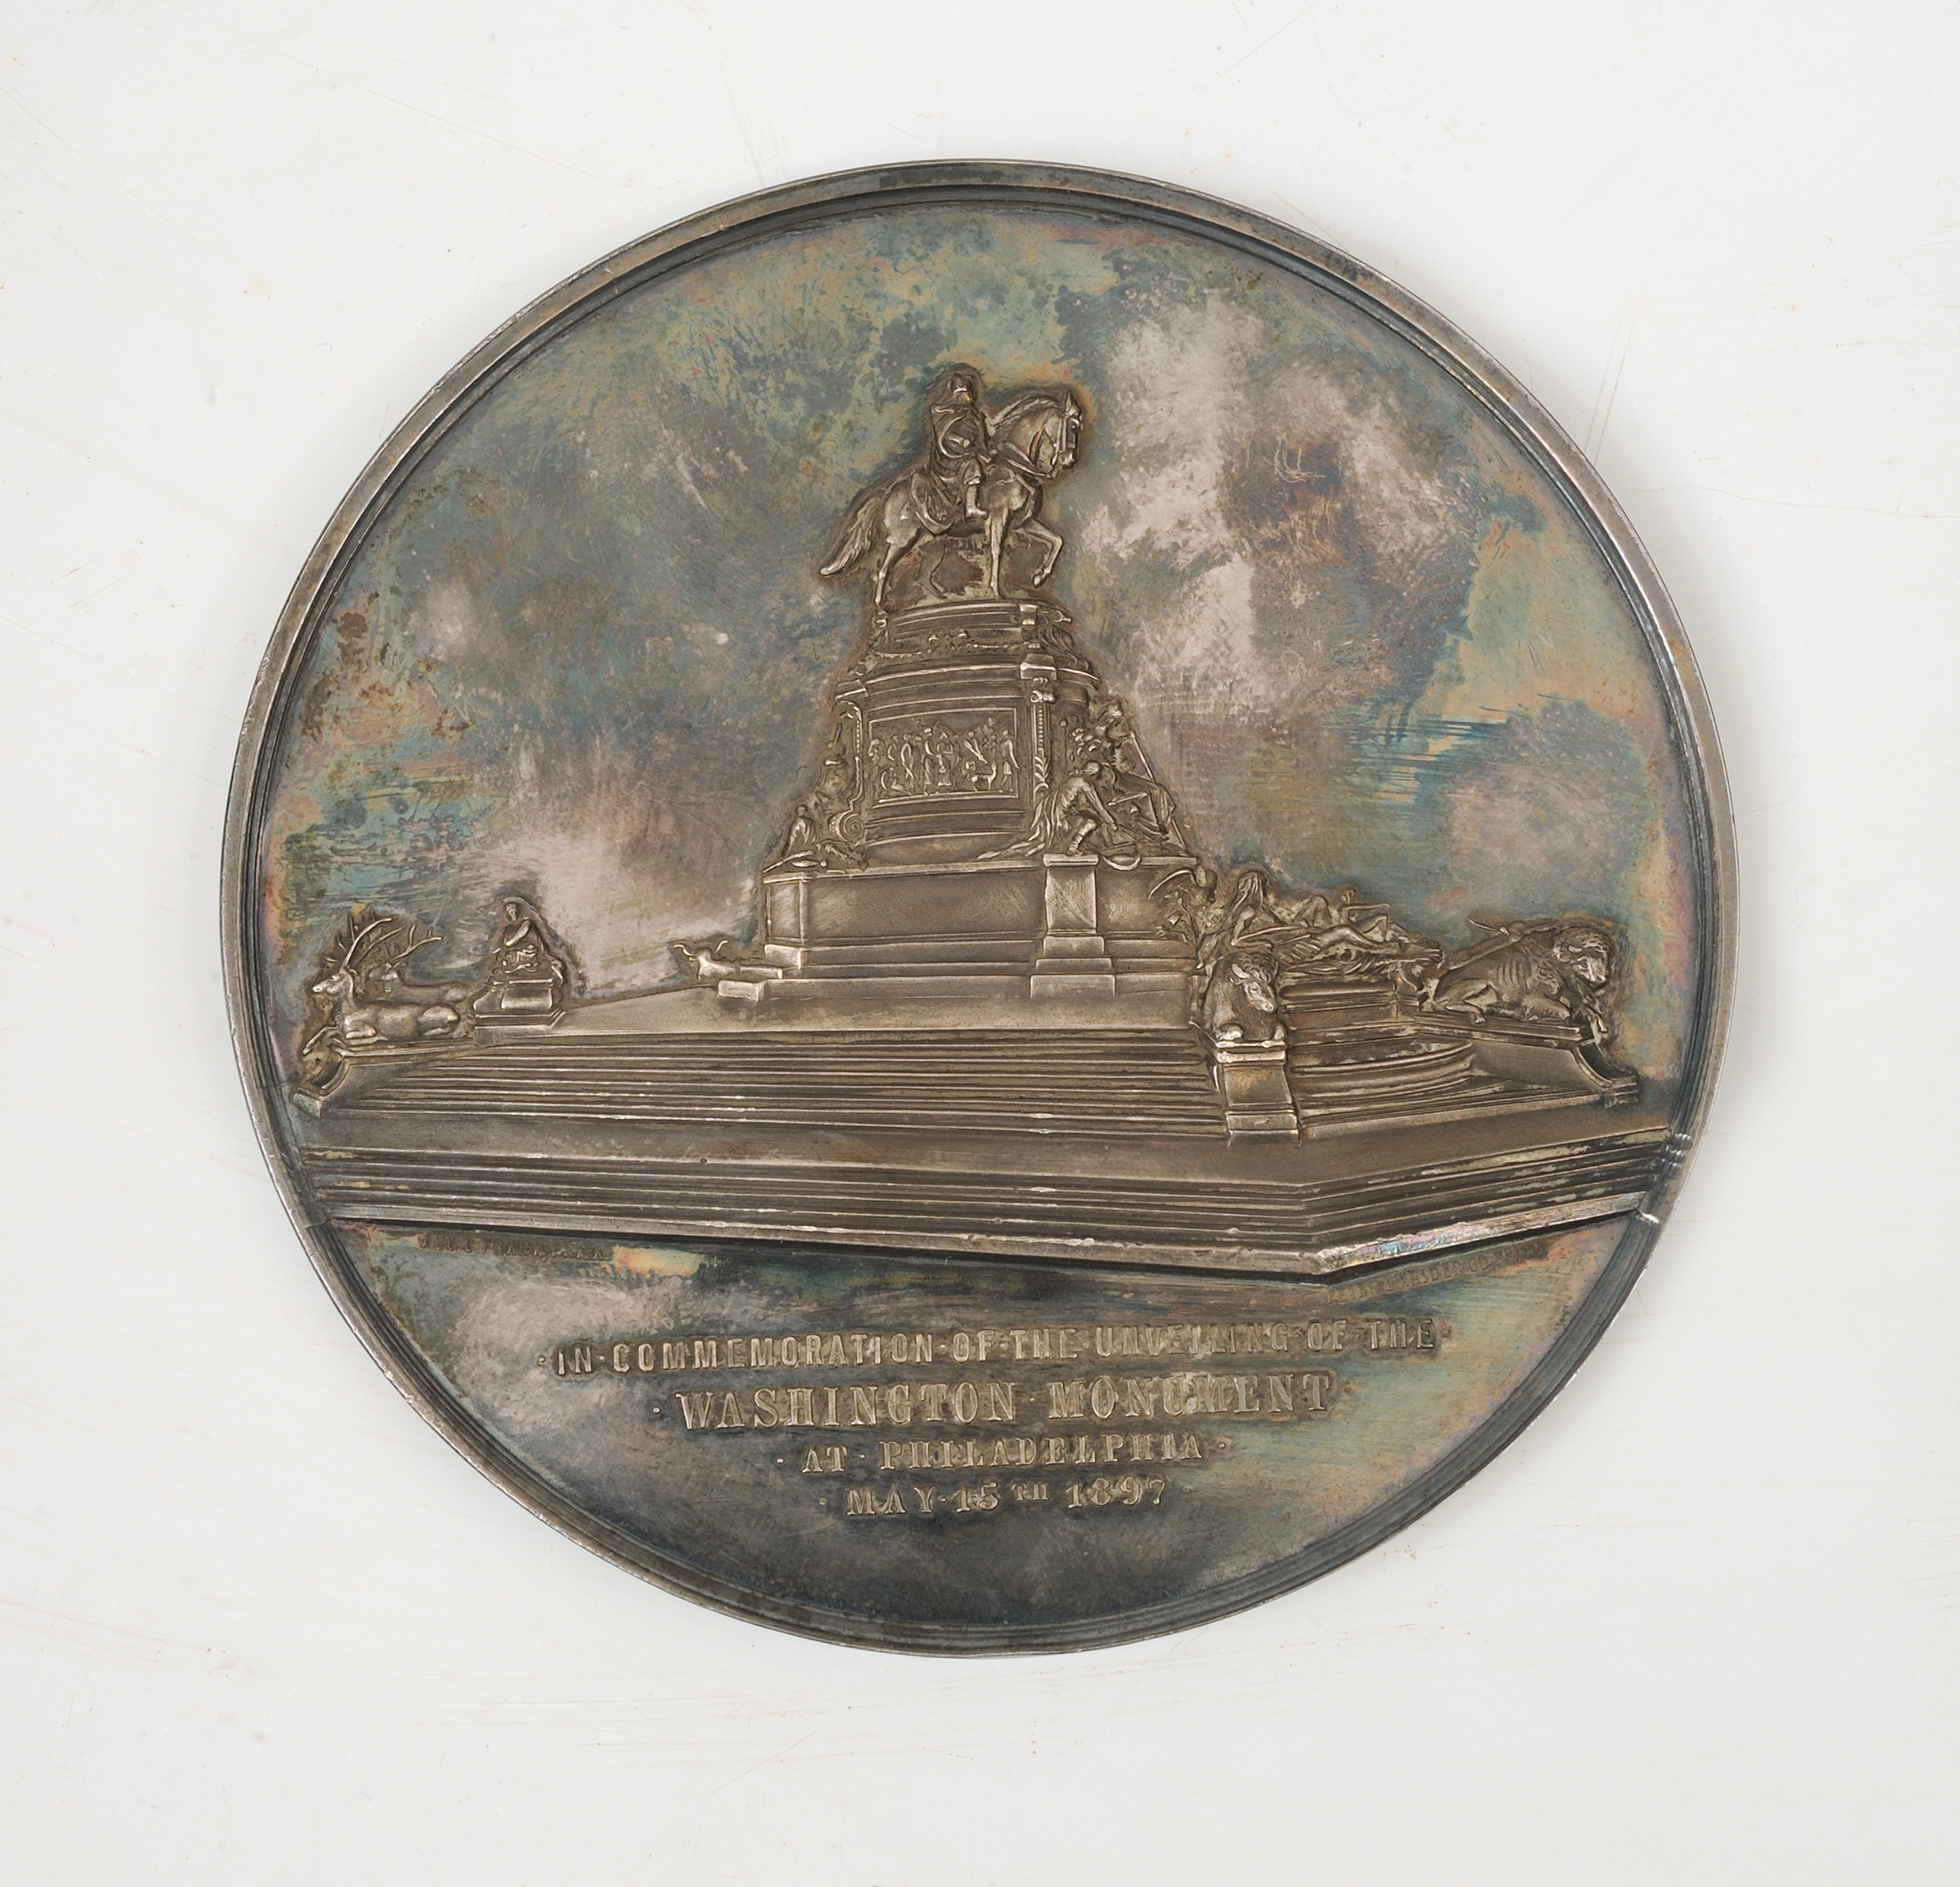 Washington Monument in Philadelphia medal, 1897